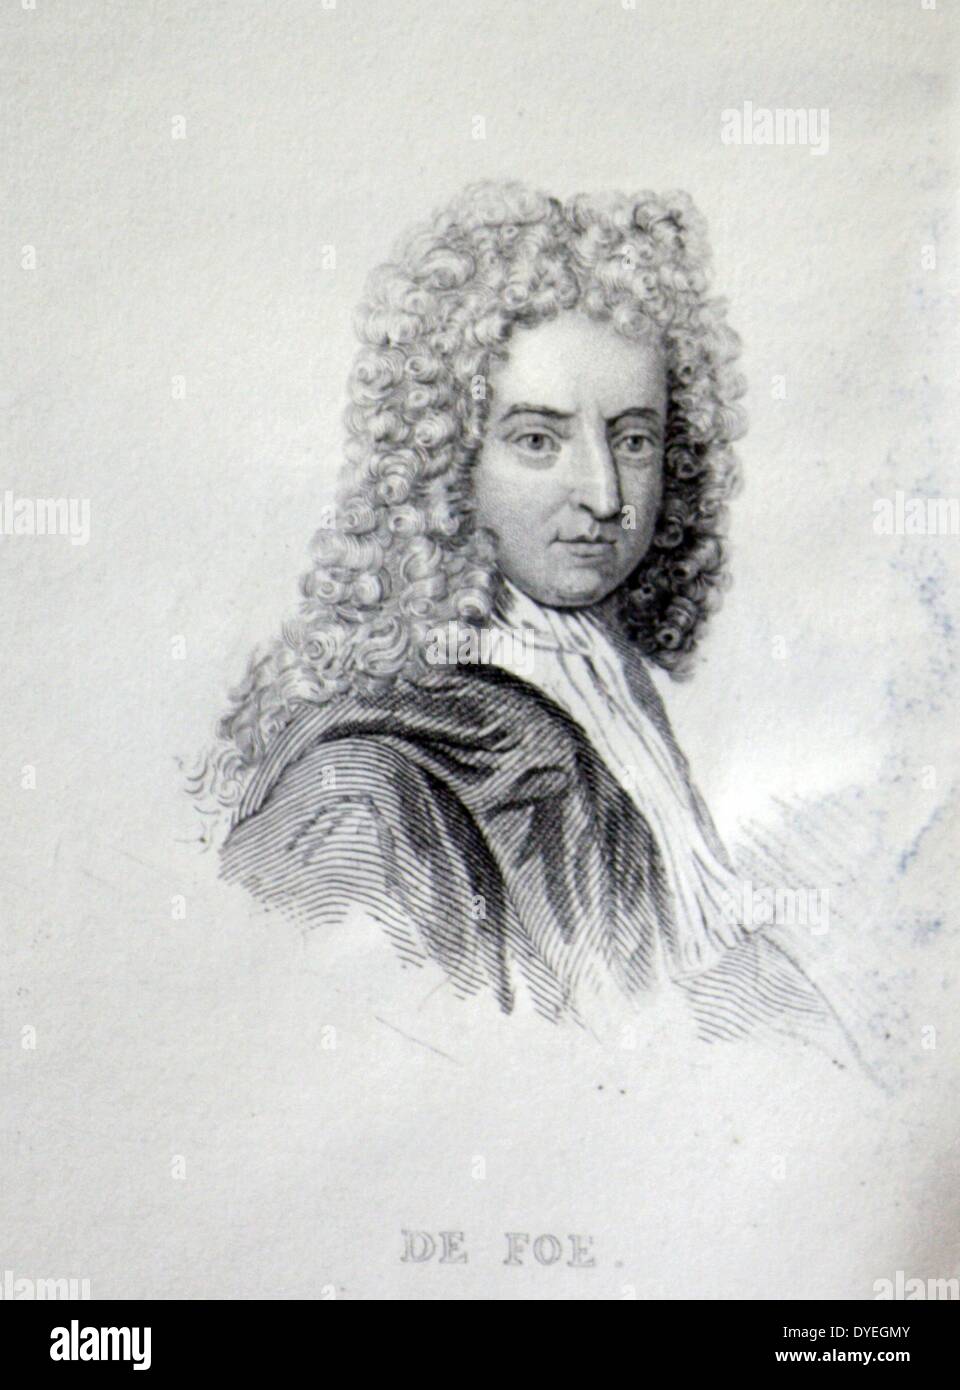 Daniel Defoe (1660 - 1731) né Daniel Foe, était un négociant anglais, écrivain, journaliste, pamphlétaire et espion, maintenant le plus célèbre pour son roman Robinson Crusoé. Banque D'Images